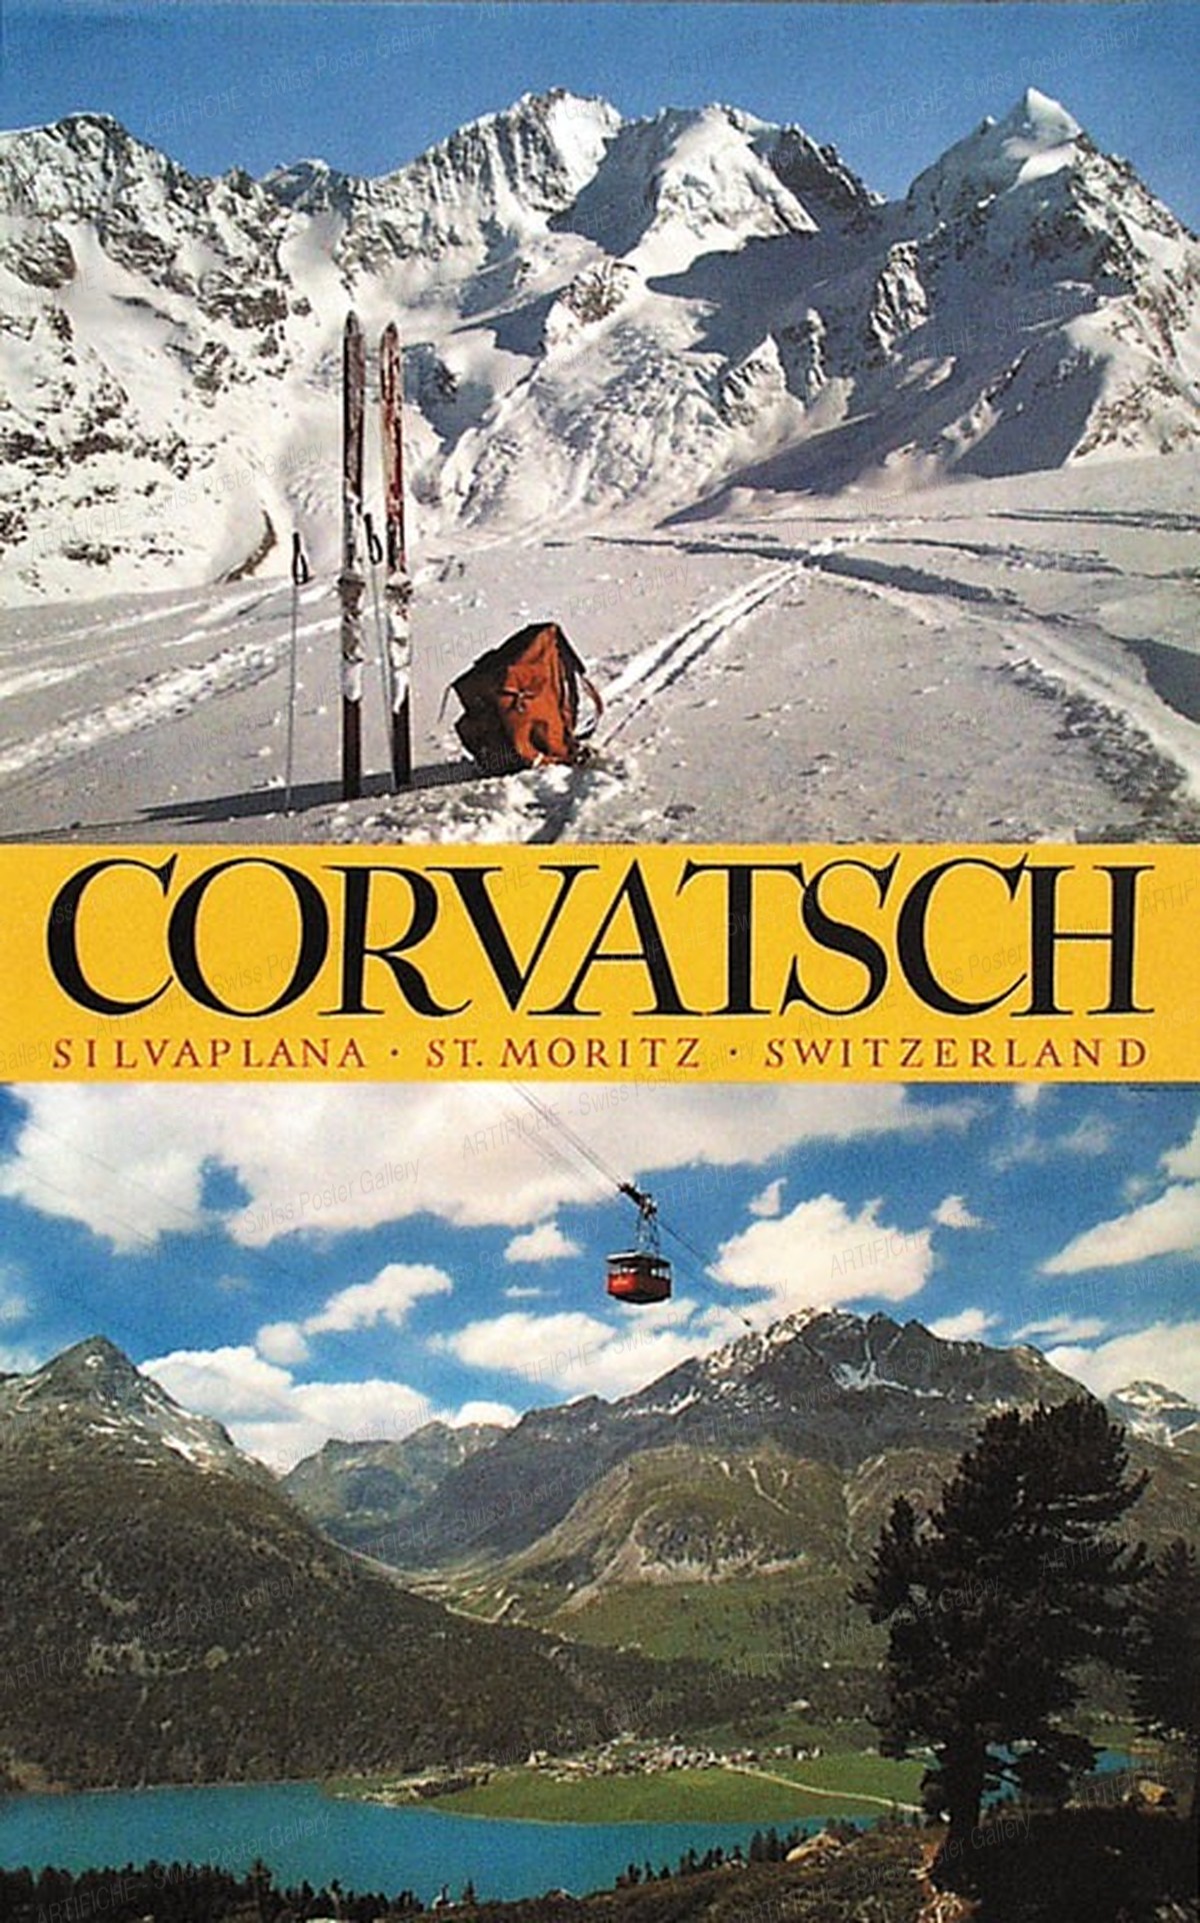 St. Moritz – Engadine – Corvatsch, Heinrich Steiner